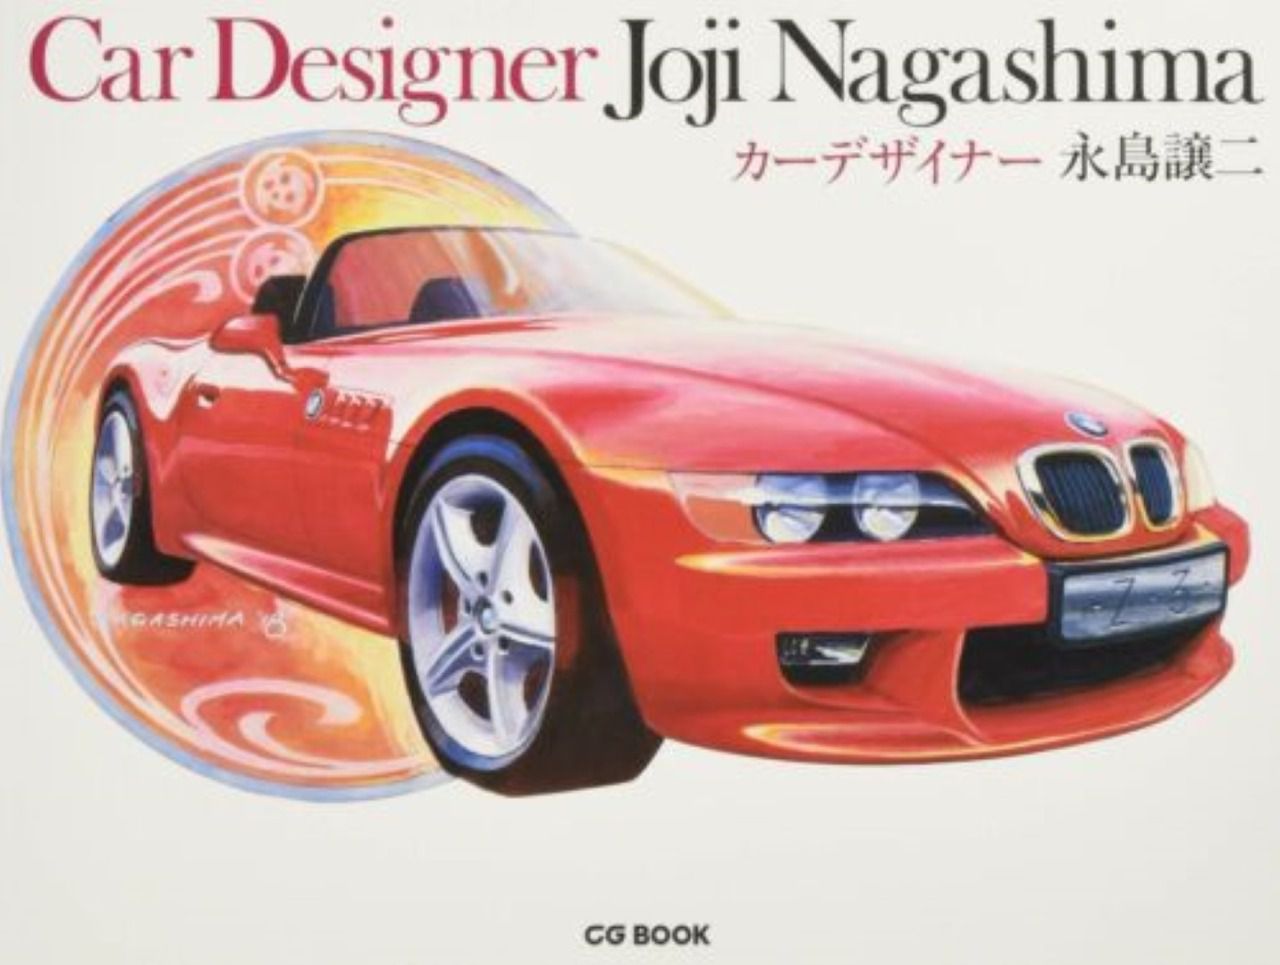 Nuevo concepto de vehículo diseñado por Joji Nagashima